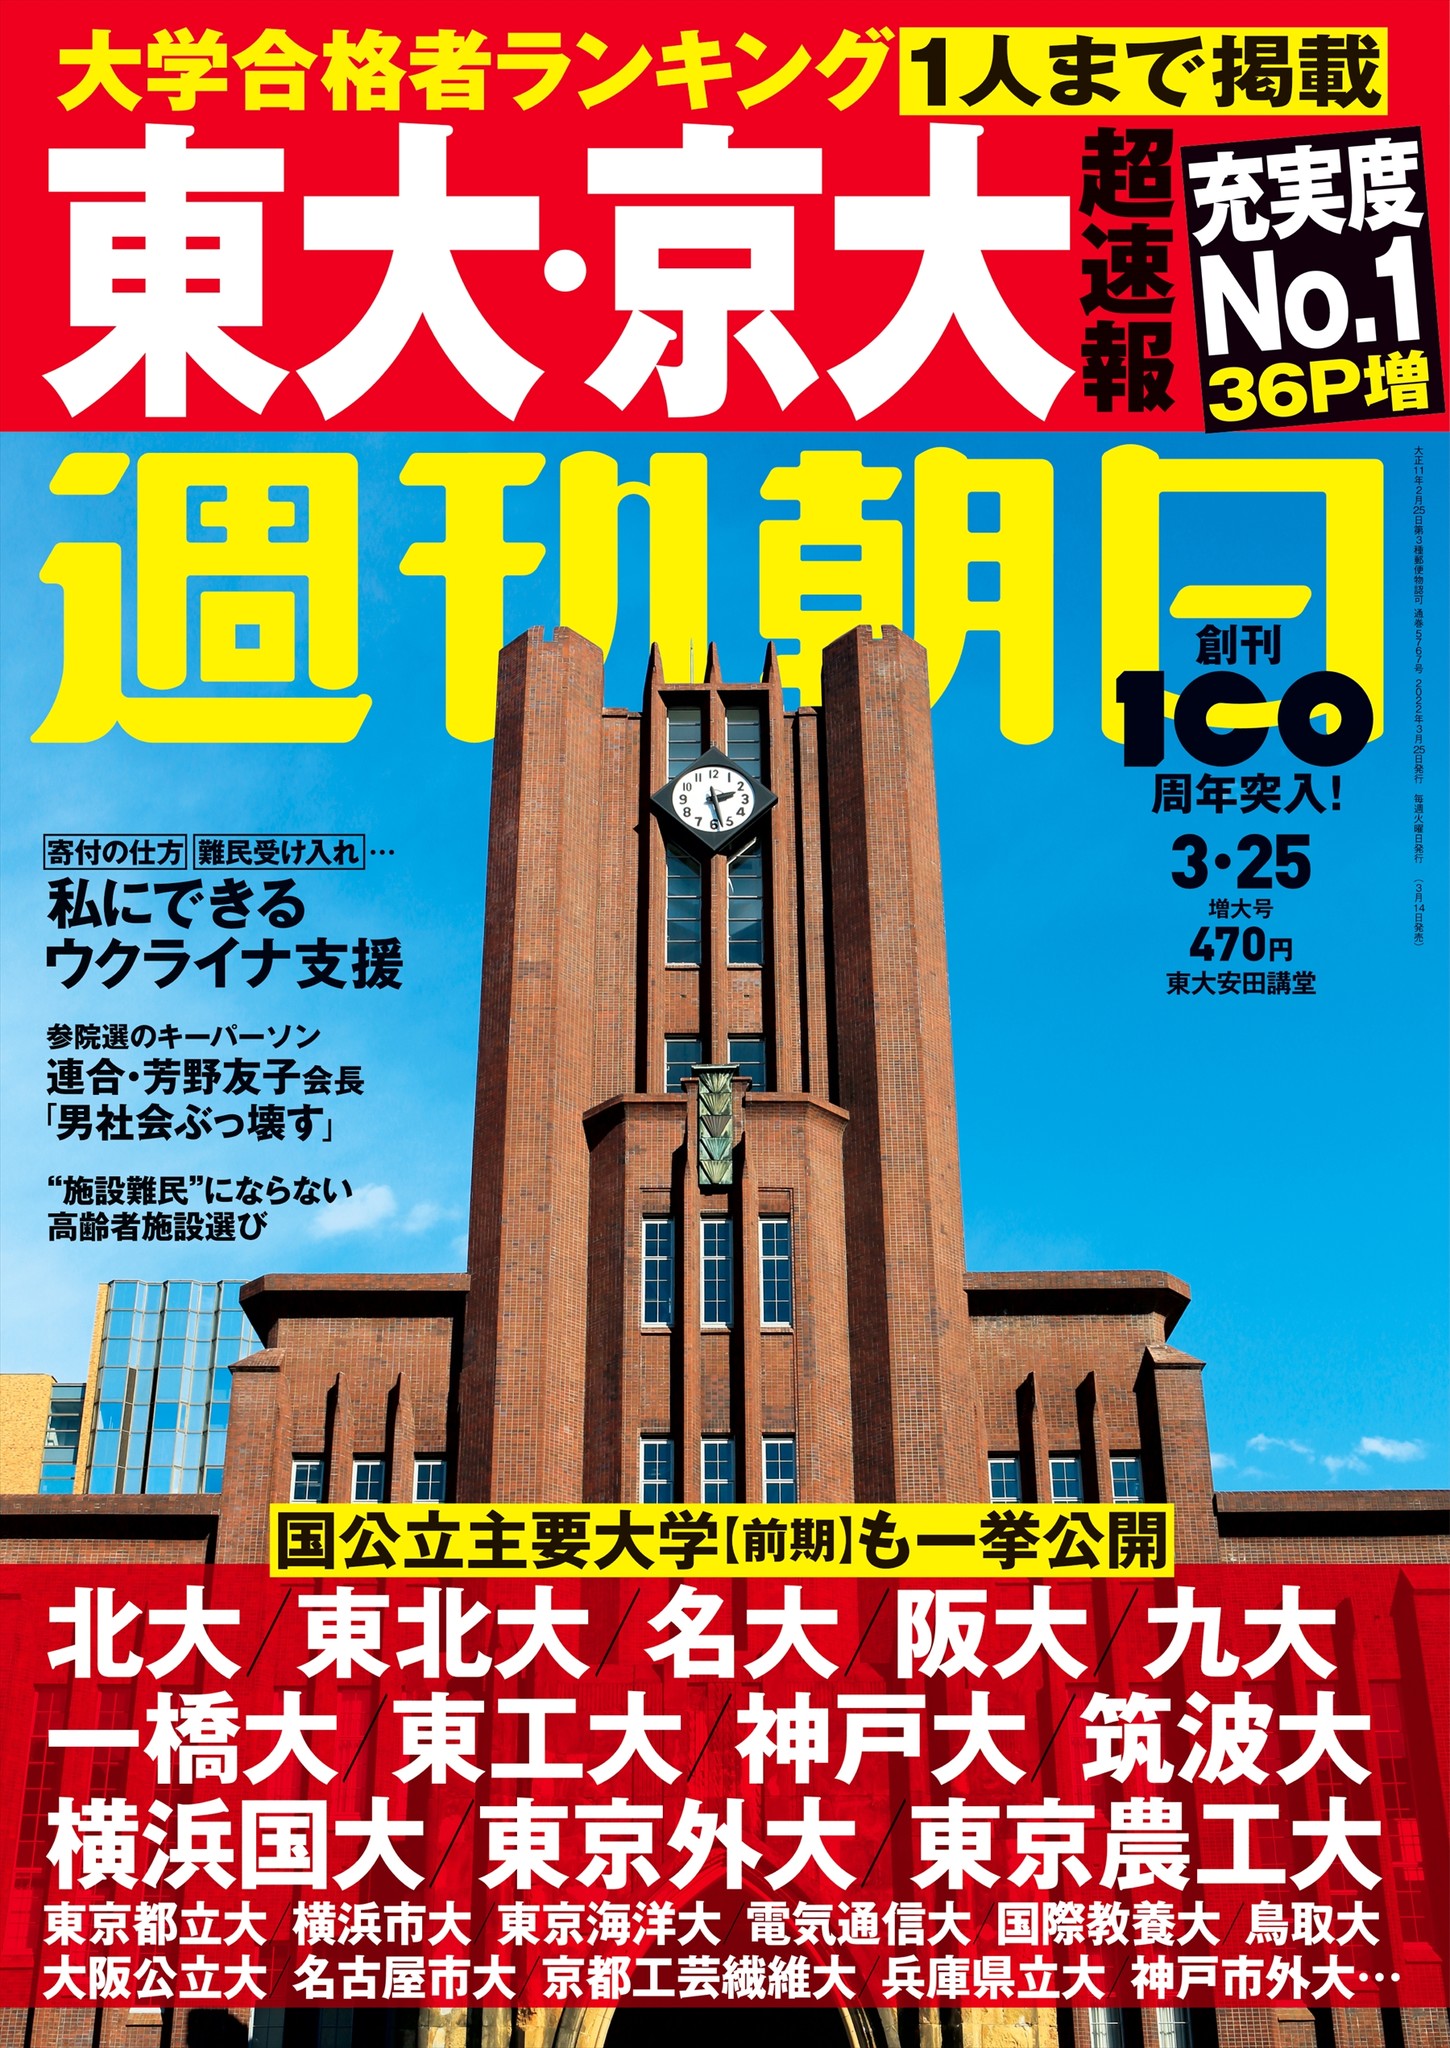 大阪 公立 大学 合格 発表 日